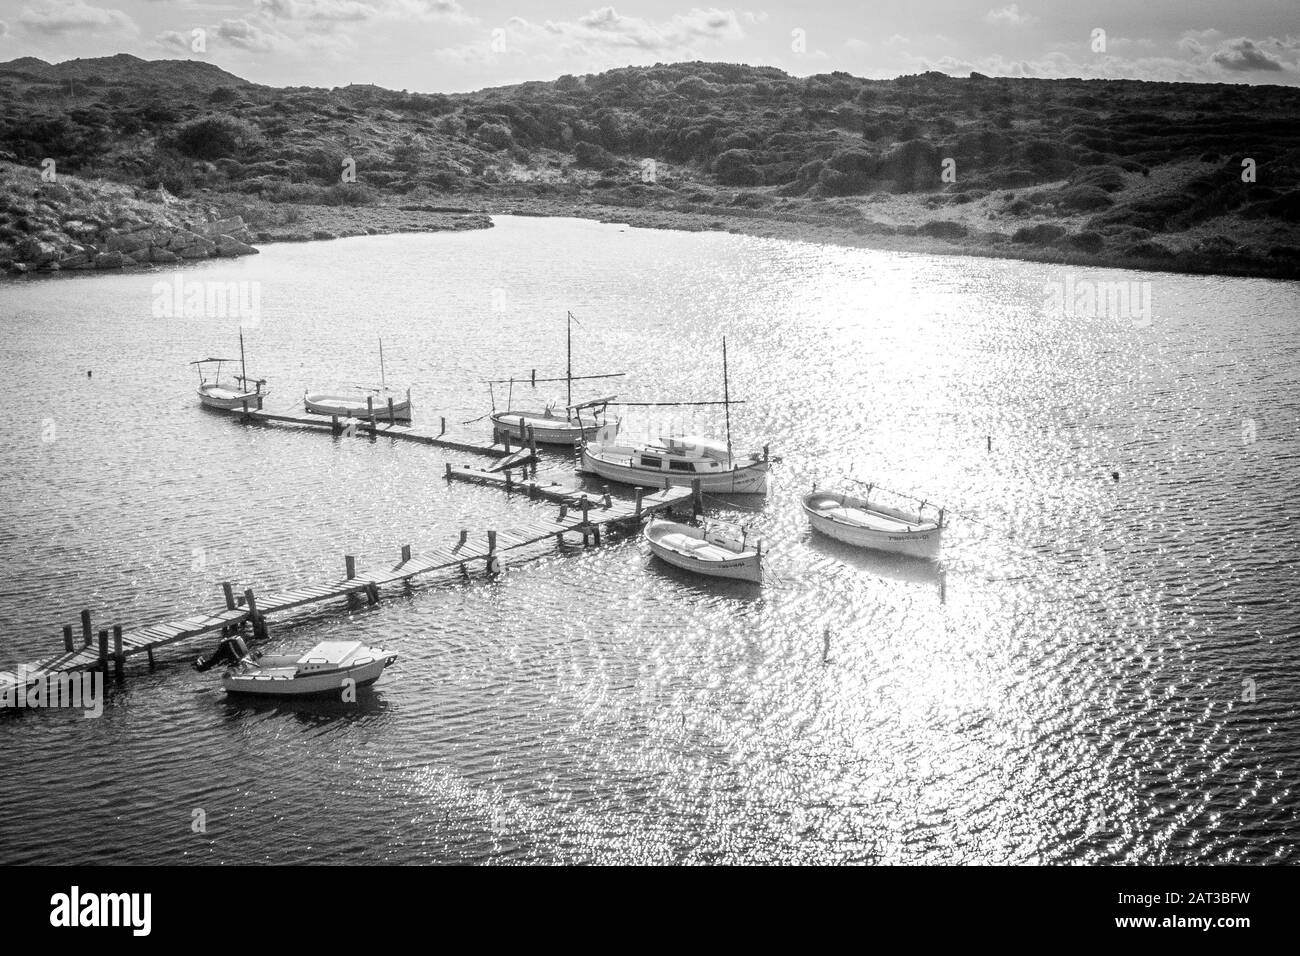 Bateaux de pêche espagnols amarrés à l'heure d'or Banque D'Images